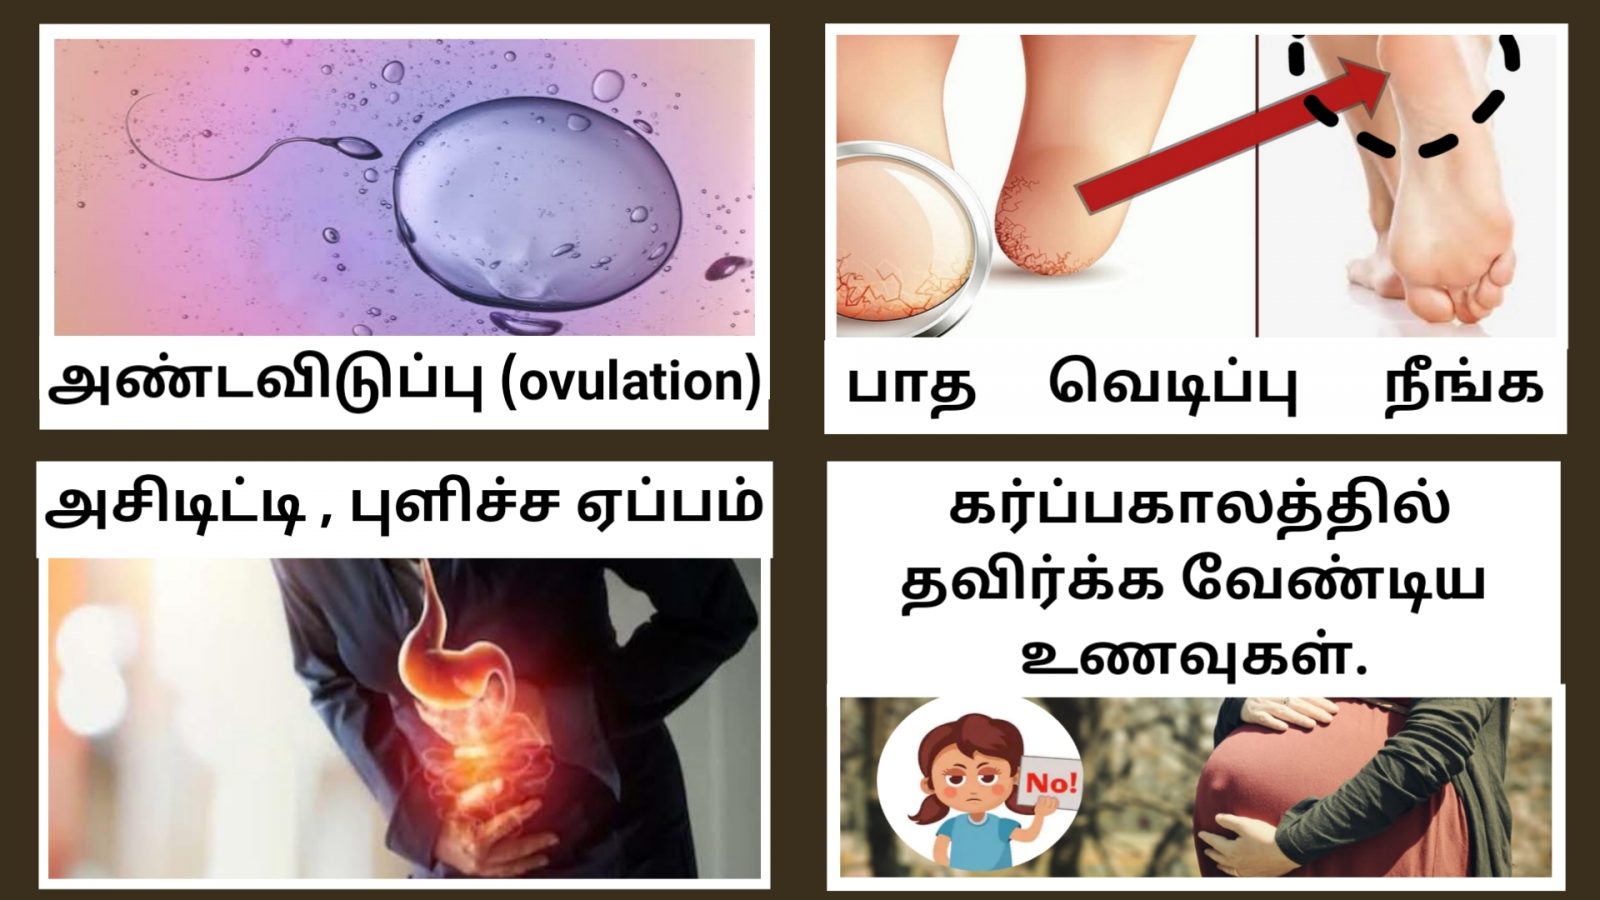 இன்றைய தகவல்கள் 2 அண்டவிடுப்பு (ovulation) என்றால் என்ன ?அதன் அறிகுறிகள் எப்படி இருக்கும் ? Reduce Your Acidity, Heart Burn, Acid Reflux, Gerd, Stomach Problems in Tamil | NEXT DAY 360 பாத வெடிப்பு நீங்க | Cracked Heels Home Remedies in Tamil | Patha vedippu tips | Next Day 360கர்ப்பகாலத்தில் எவ்வகை உணவுகளை உண்ண வேண்டும் ? | What foods should be eaten